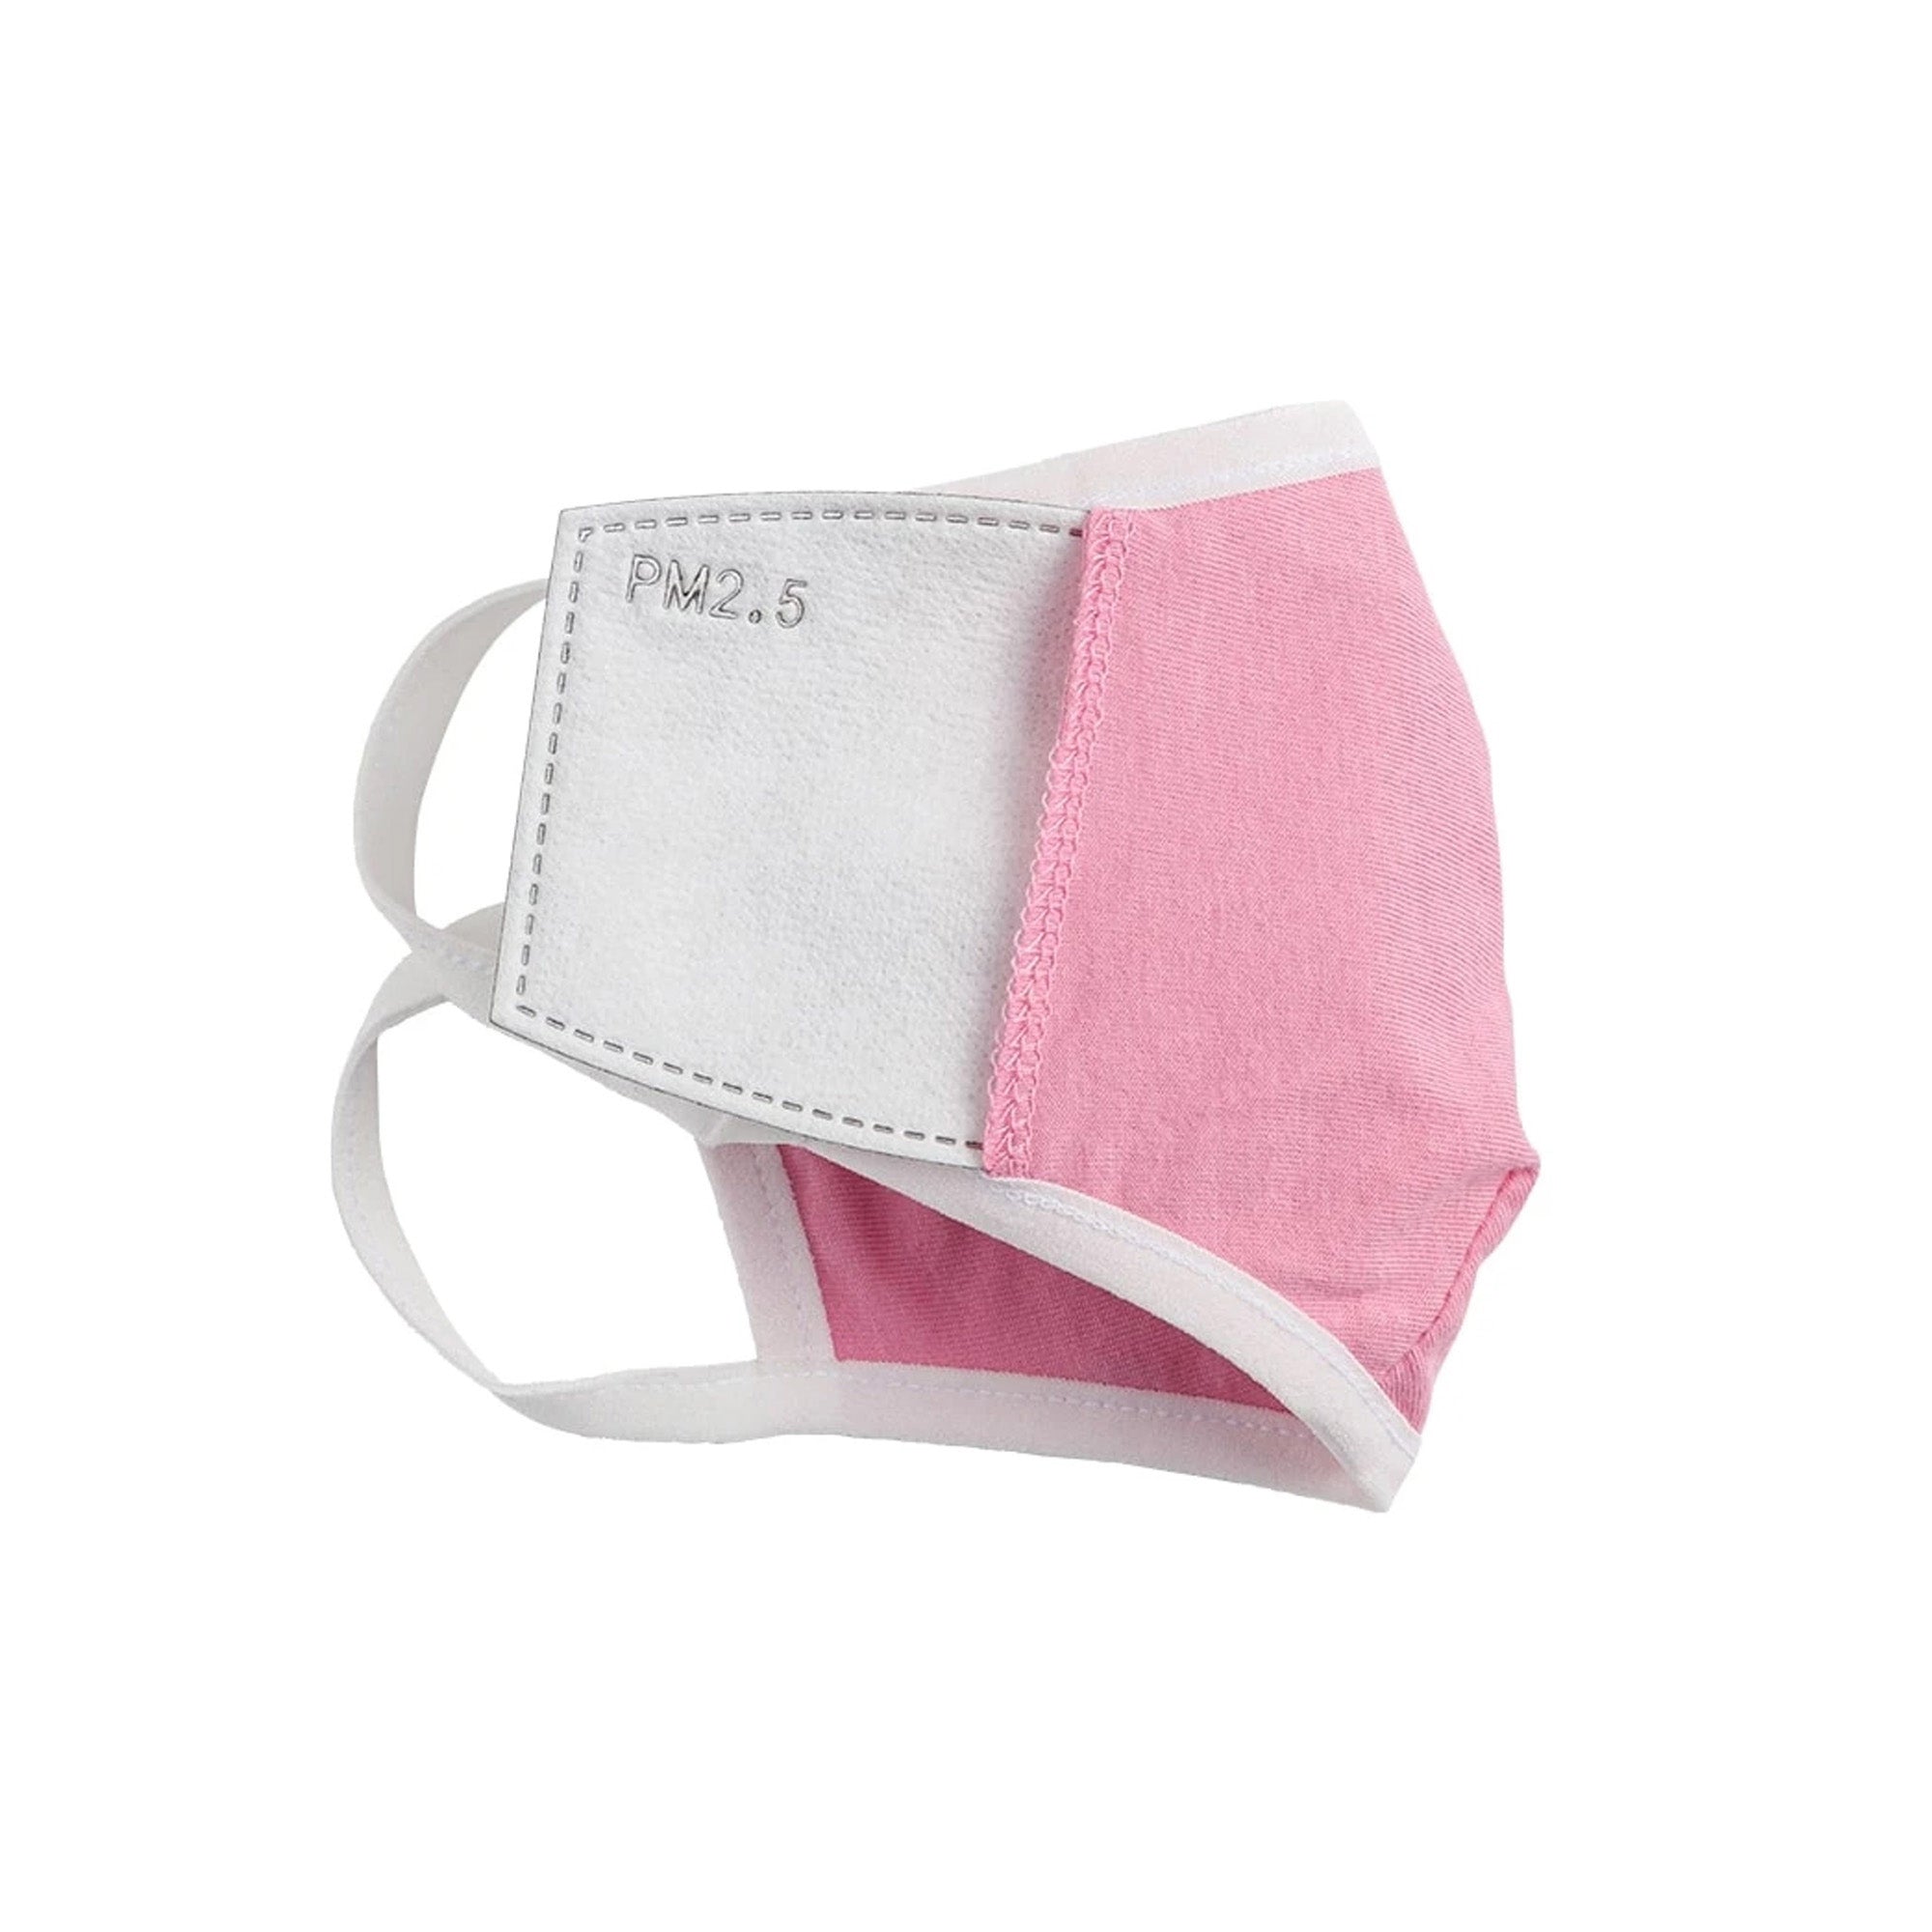 Bulk - Safe+Mate Pink Washable Kids 3-6 Cloth Face Mask -3pk (bulk packaging) - 15-08016